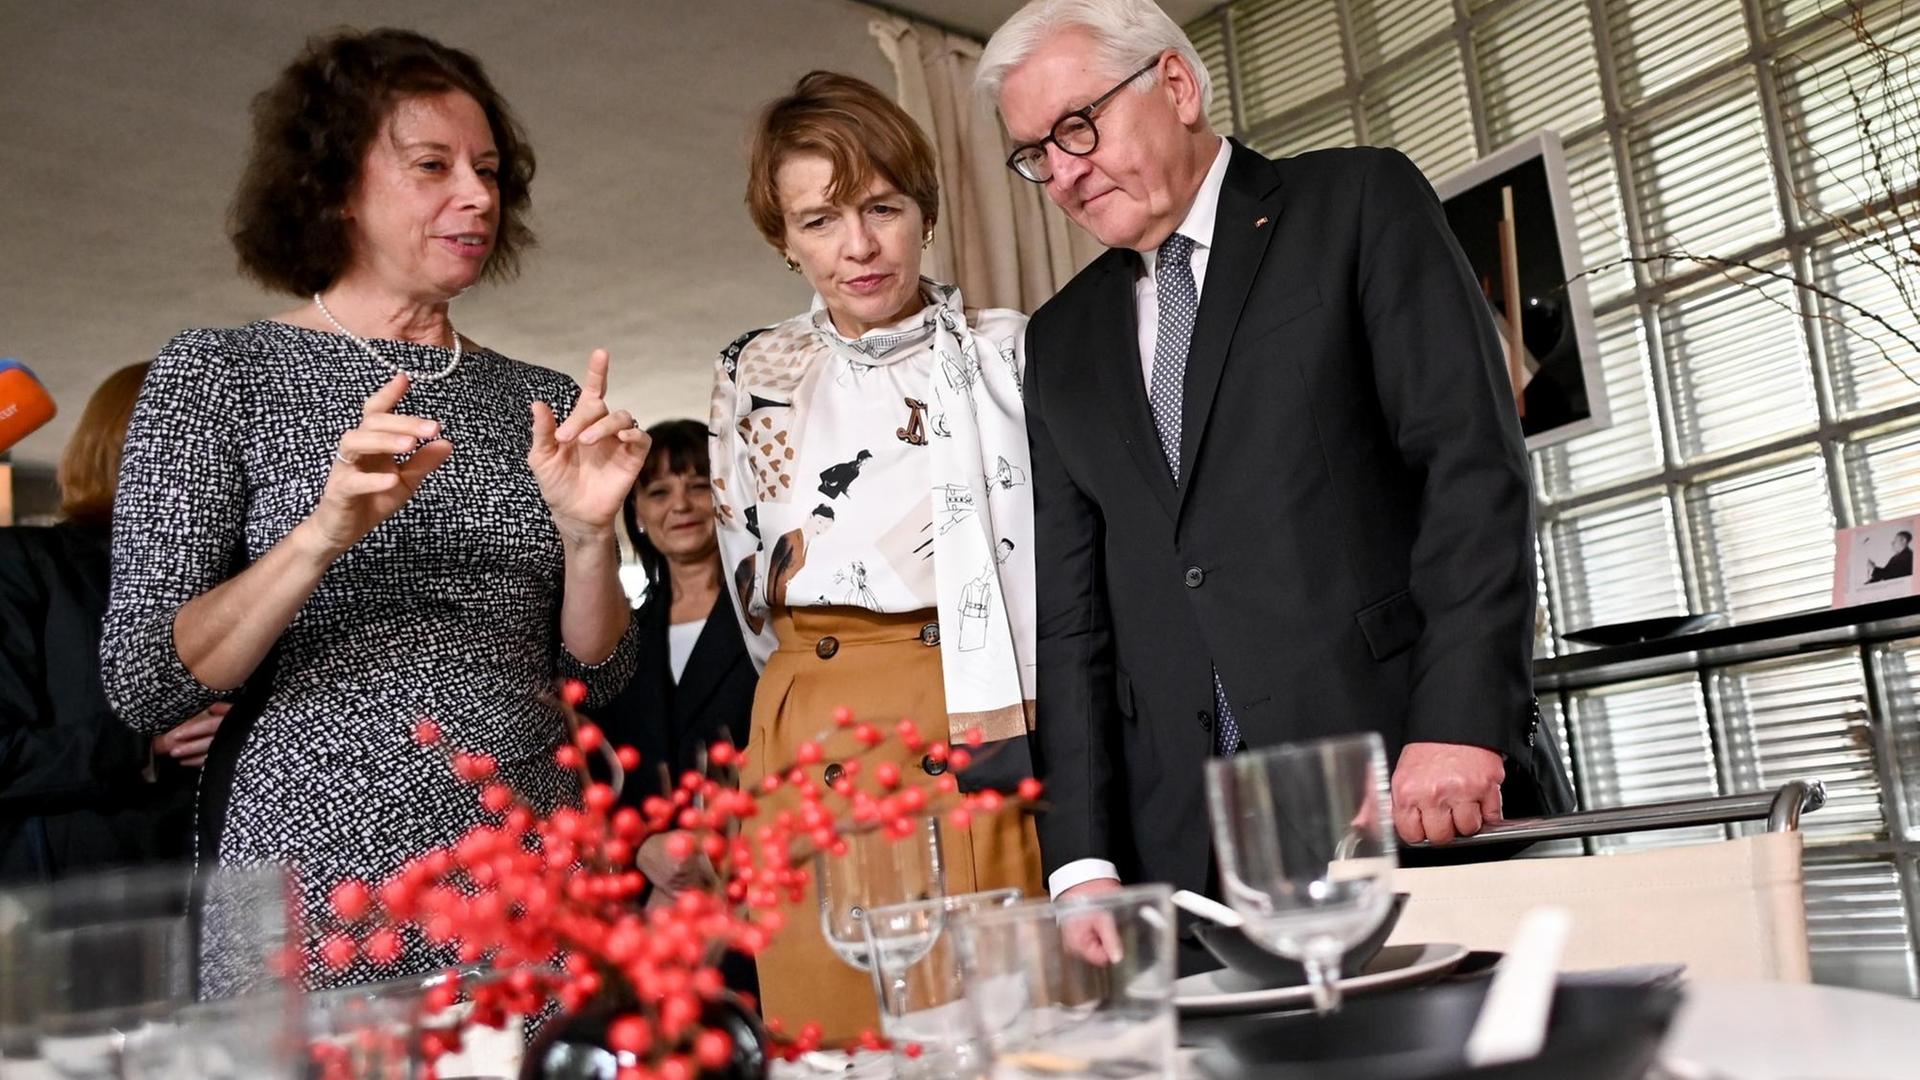 Bundespräsident Frank-Walter Steinmeier und seine Frau Elke Büdenbender besichtigen mit Erika Pfammatter (l), Enkelin von Walter Gropius das Gropius Haus. Die drei besichtigen einen gedeckten Tisch im Gropius Haus, das originalgetreu erhalten ist.